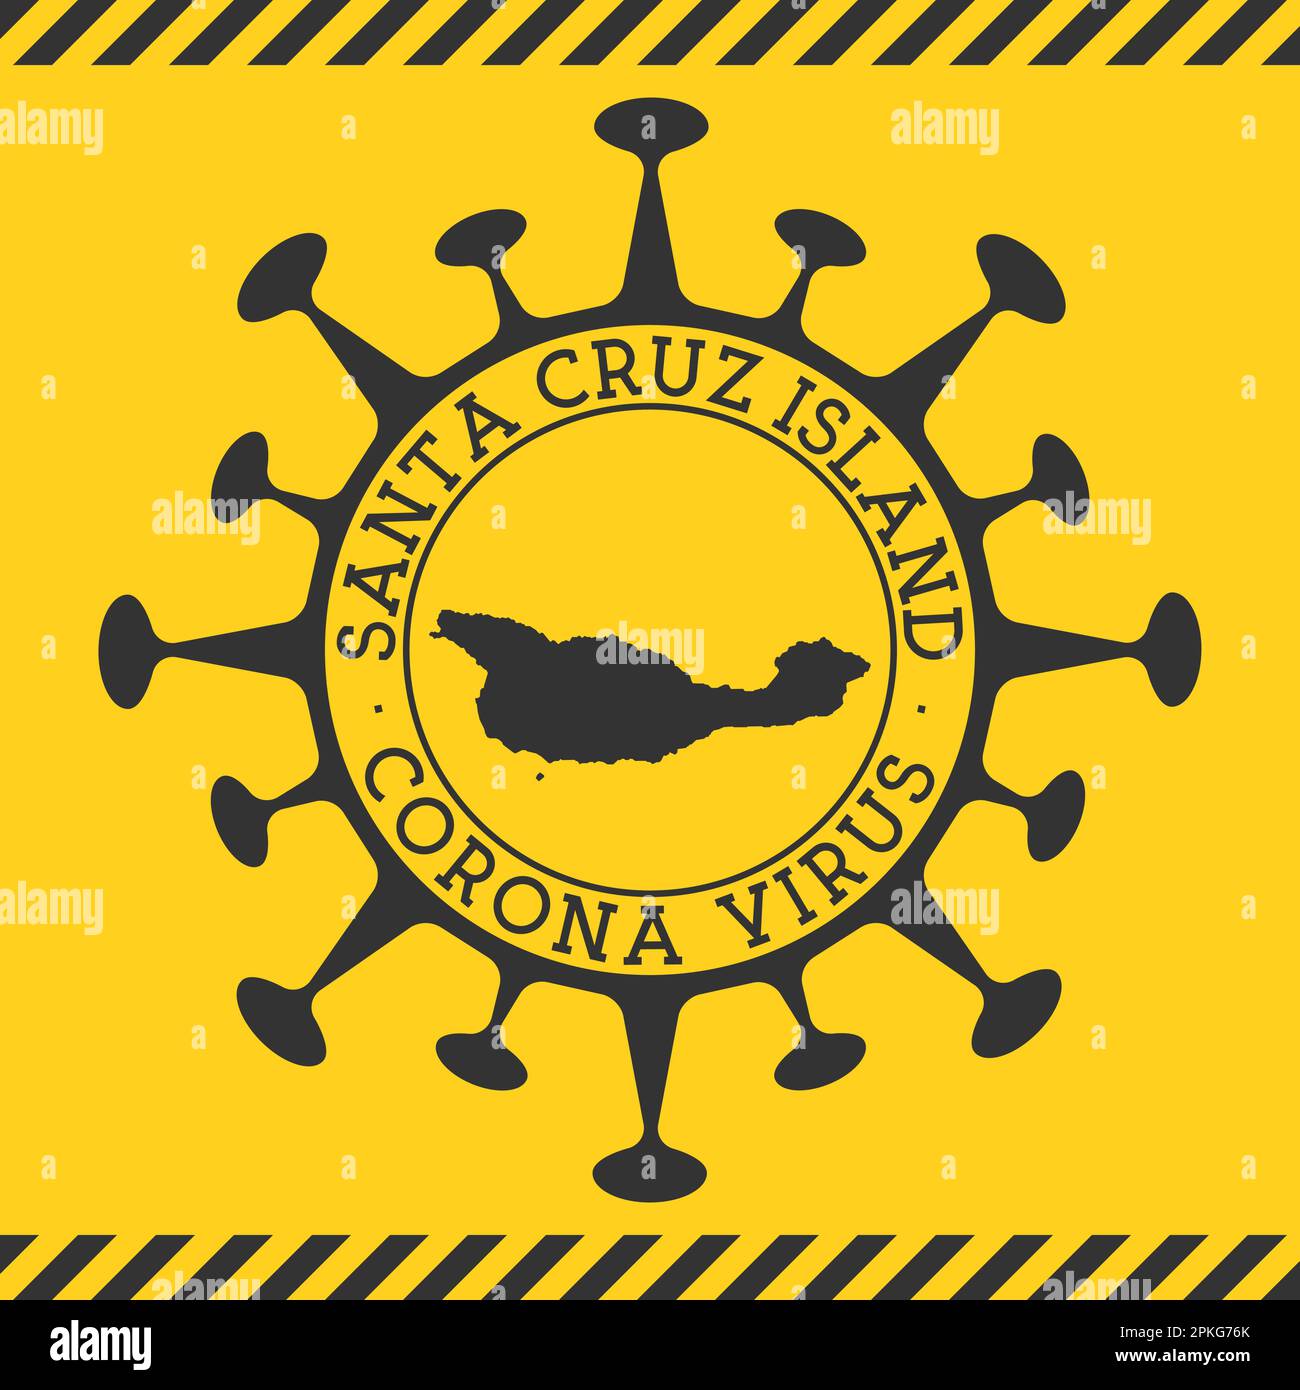 Virus Corona dans l'île de Santa Cruz signe. Badge rond avec forme de virus et carte de Santa Cruz. Timbre de verrouillage de l'épidemy de l'île jaune. Illustration vectorielle Illustration de Vecteur